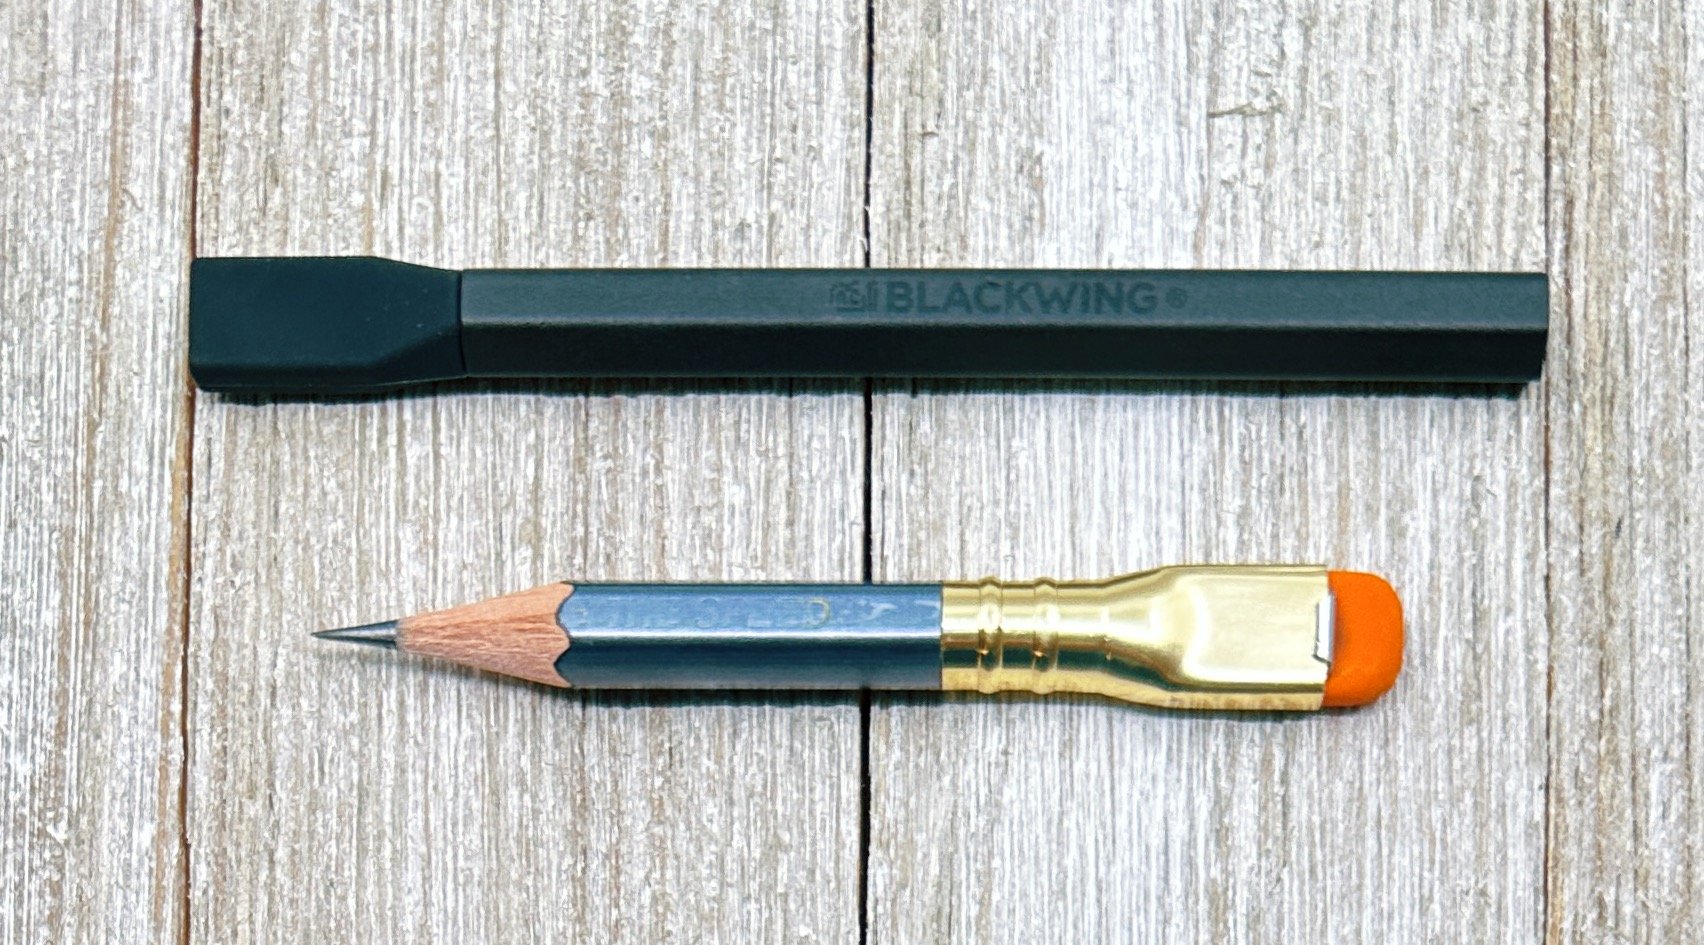 Blackwing] Pencil Extender – Baum-kuchen